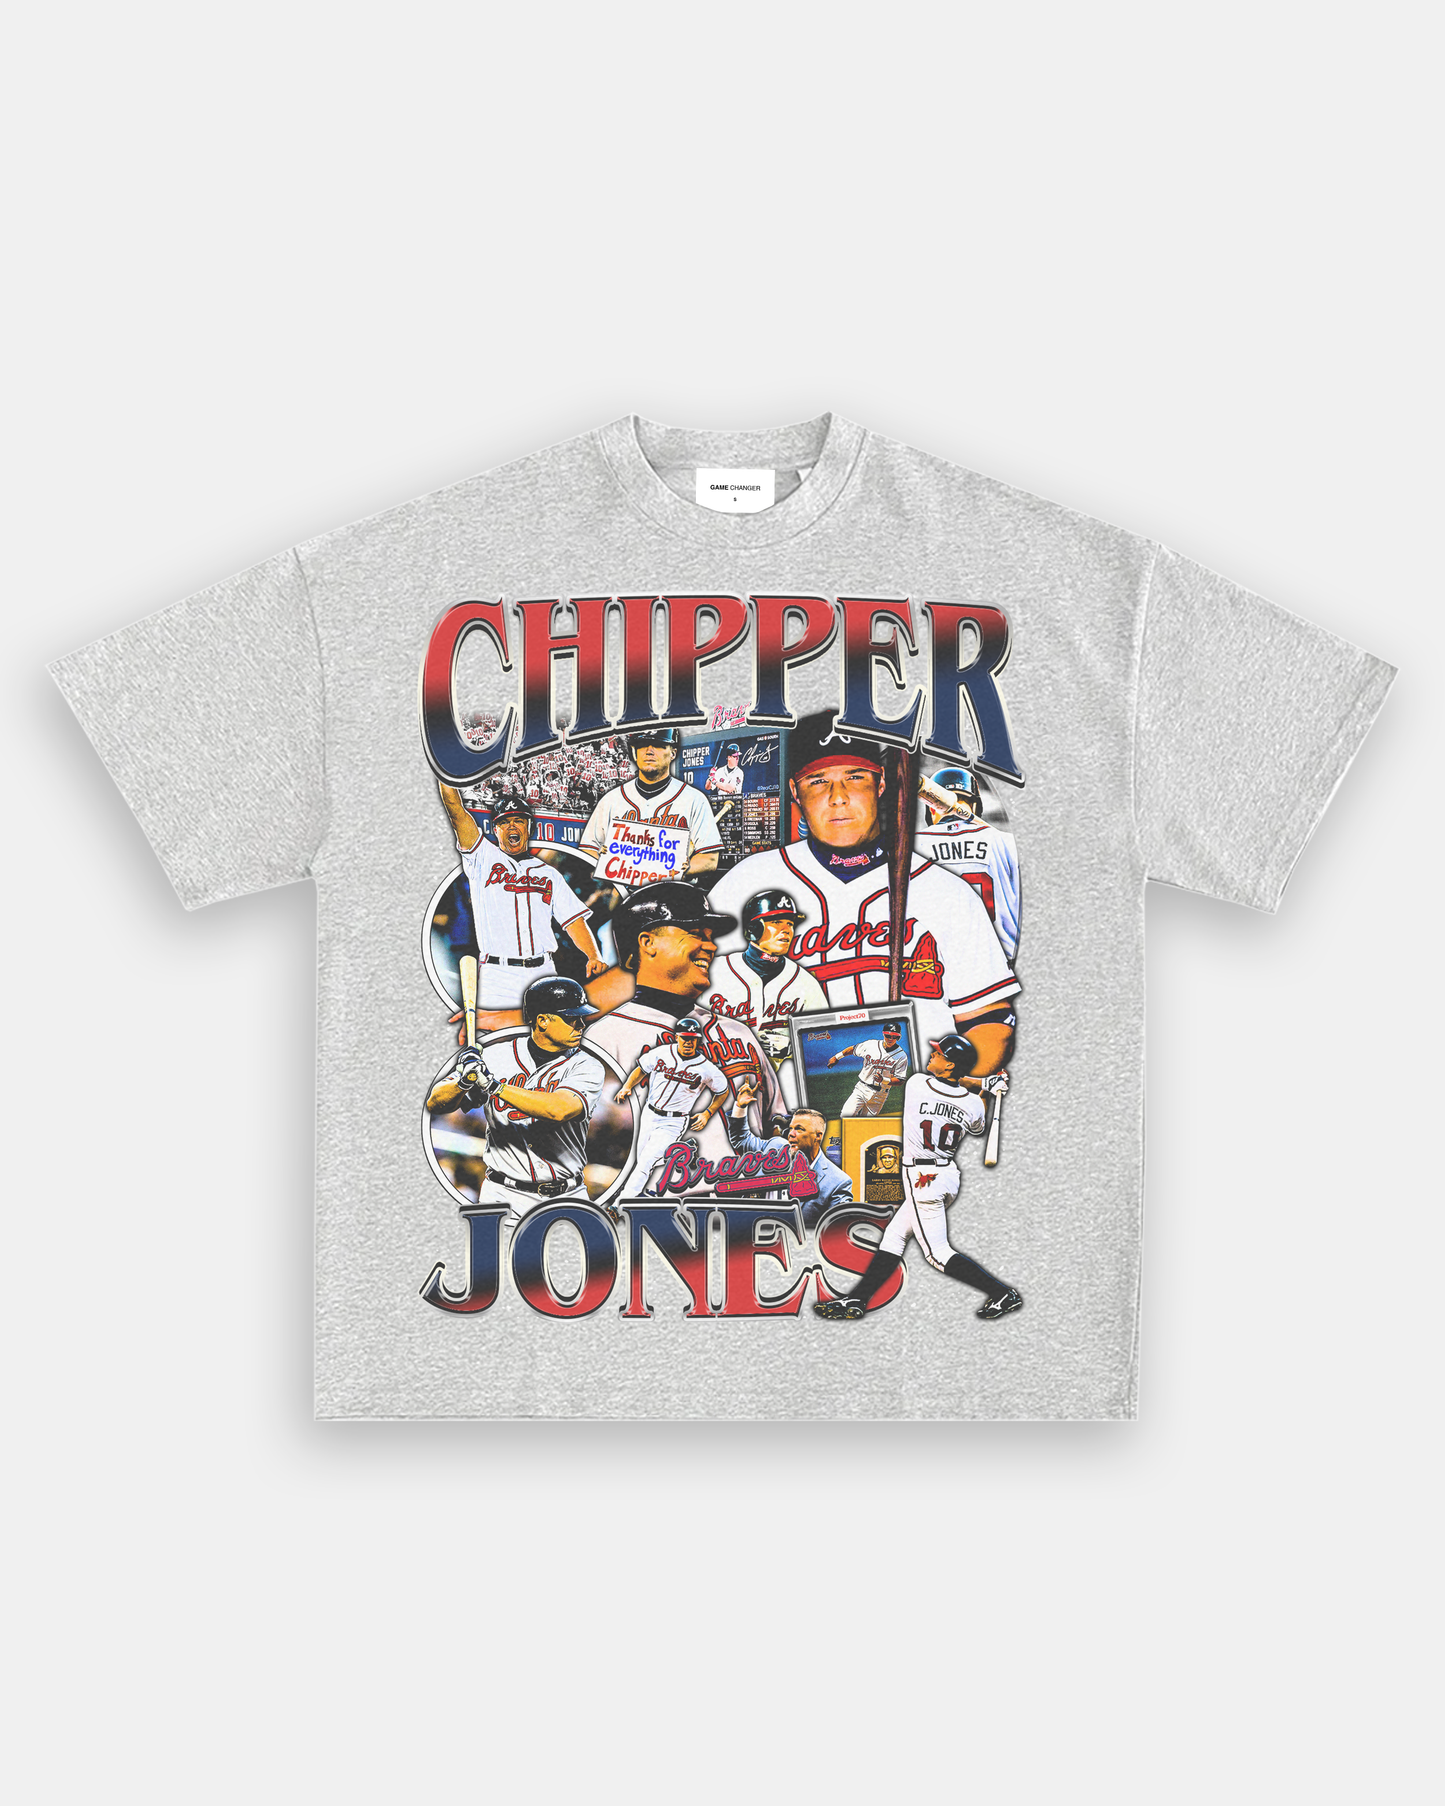 CHIPPER JONES TEE